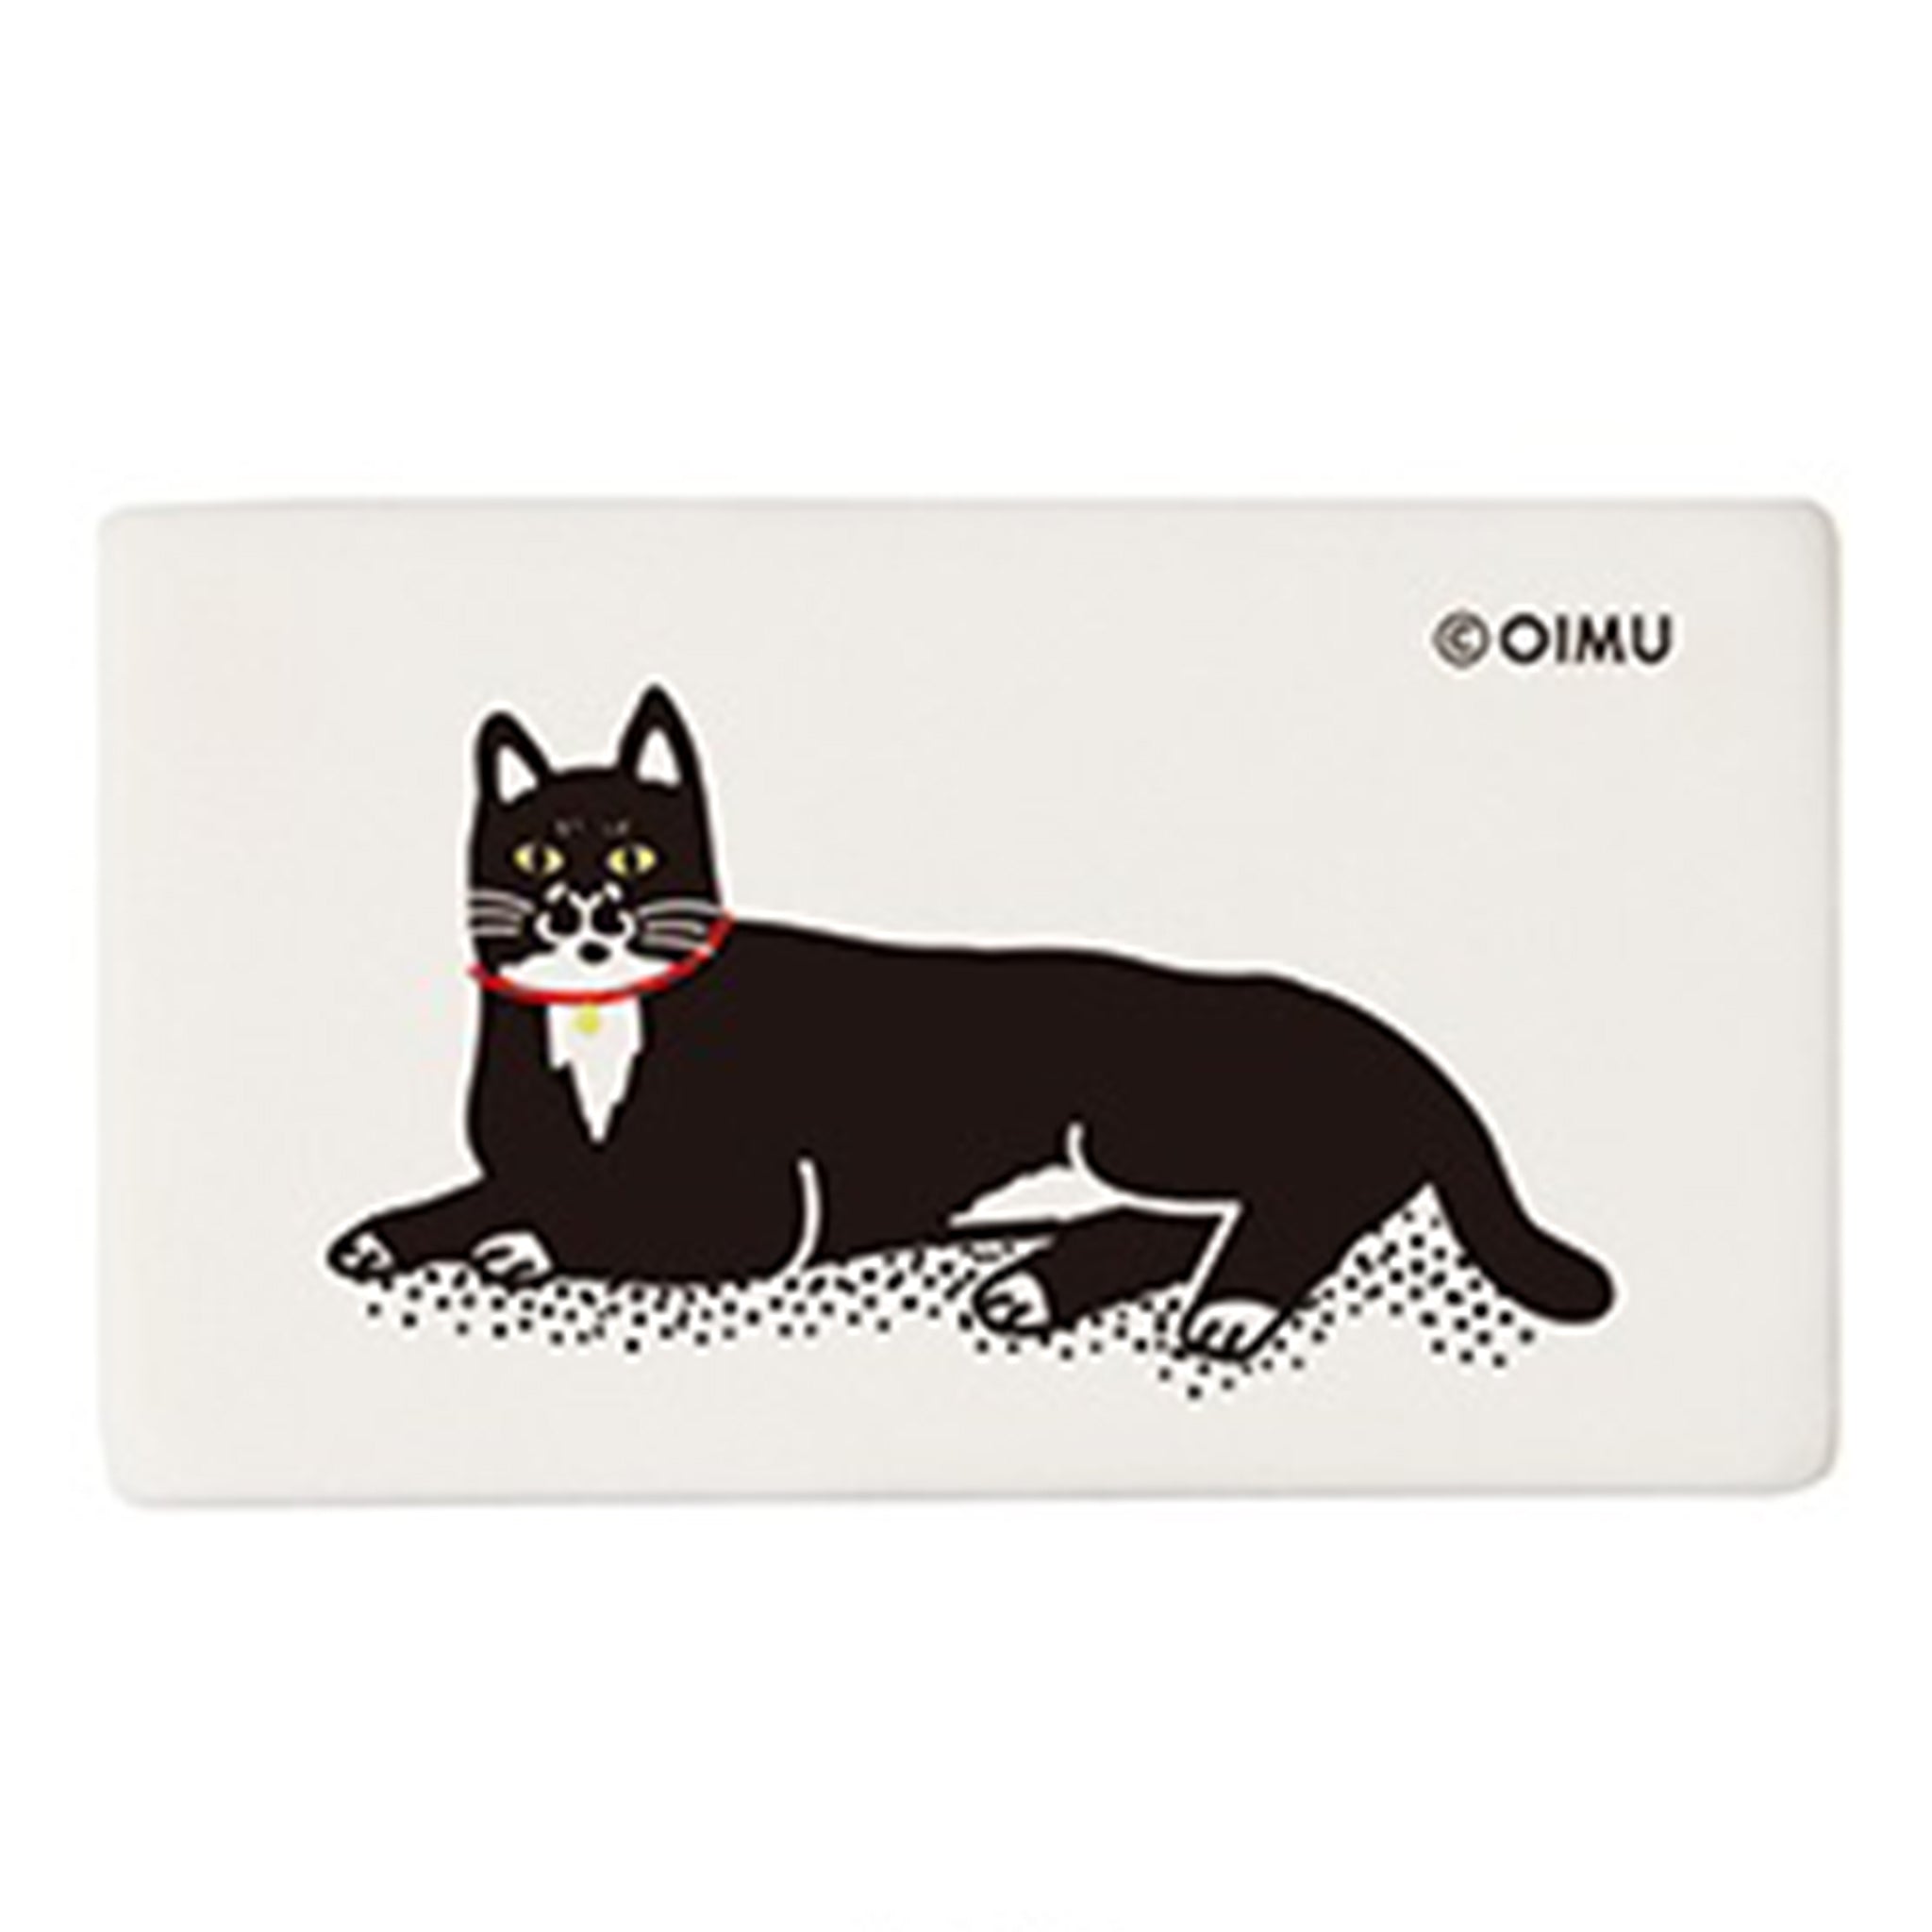 OIMU Eraser - Lounge Cat